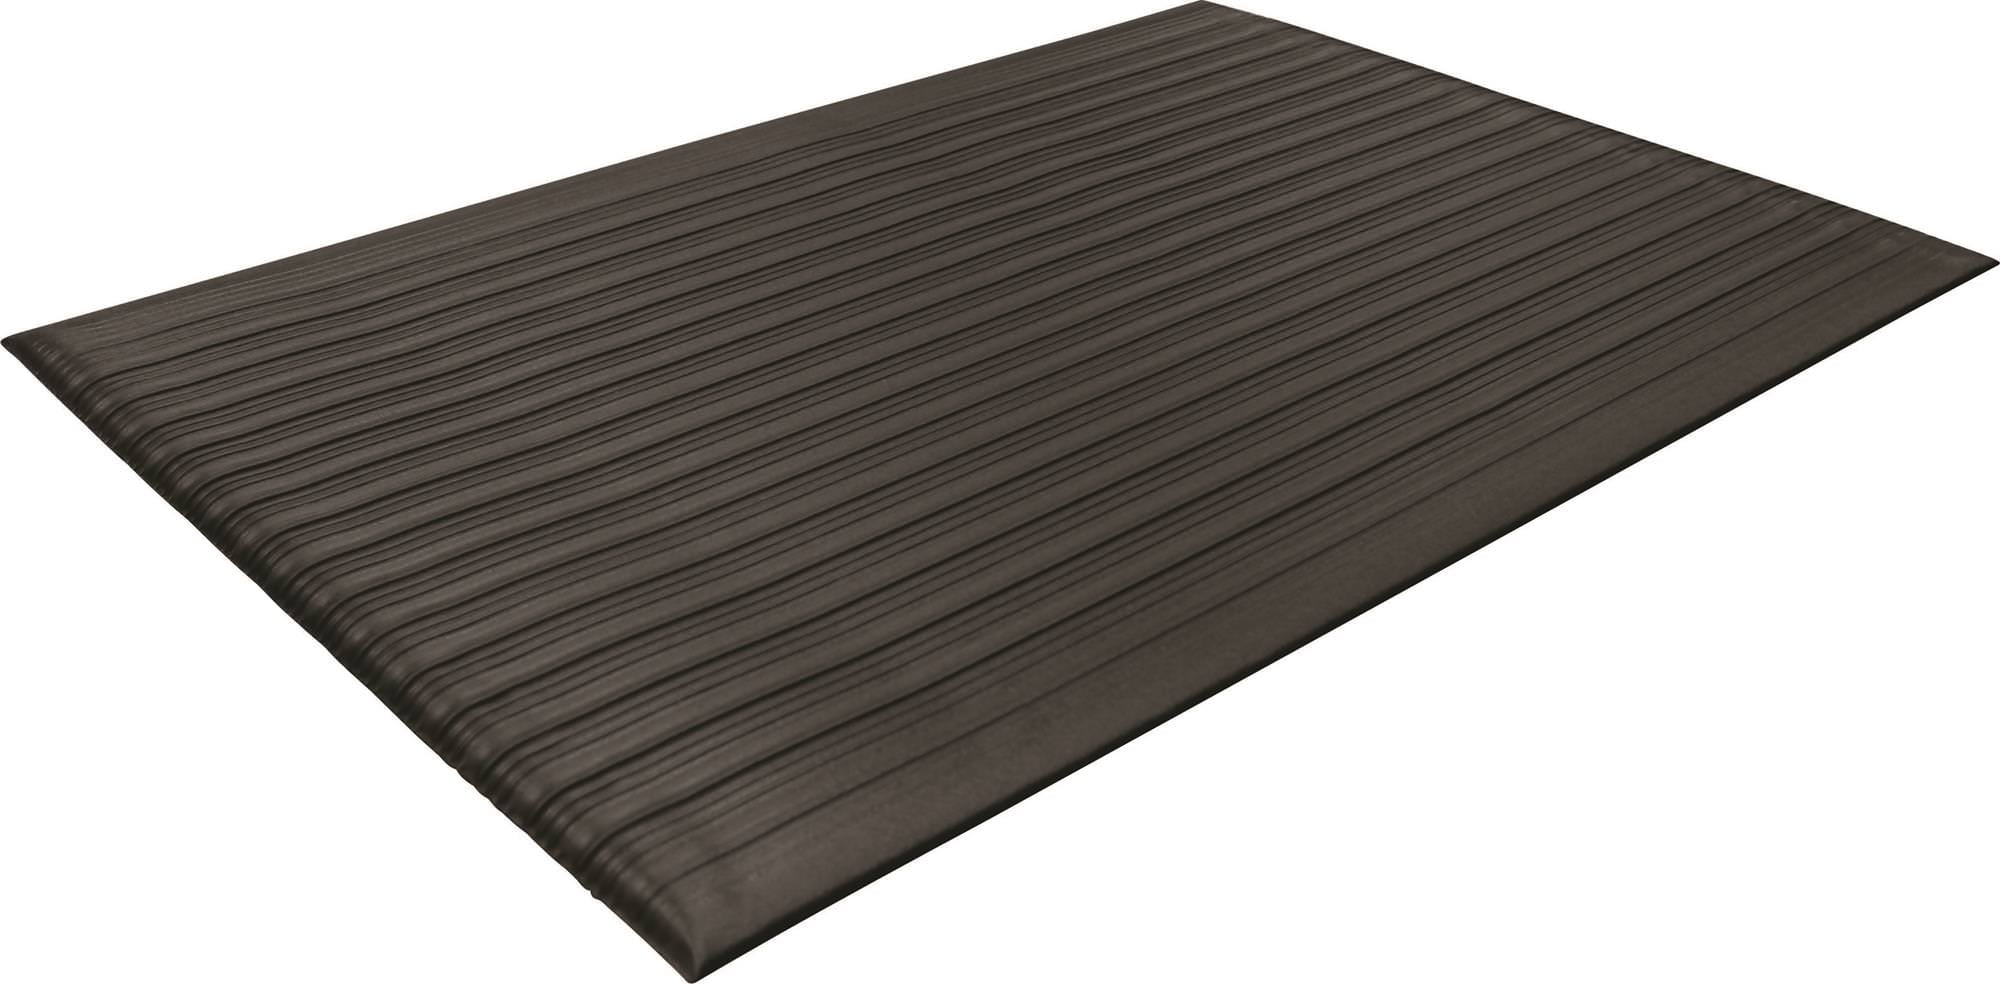 3x10 Charcoal Guardian WaterGuard Indoor/Outdoor Wiper Scraper Floor Mat Rubber/Nylon